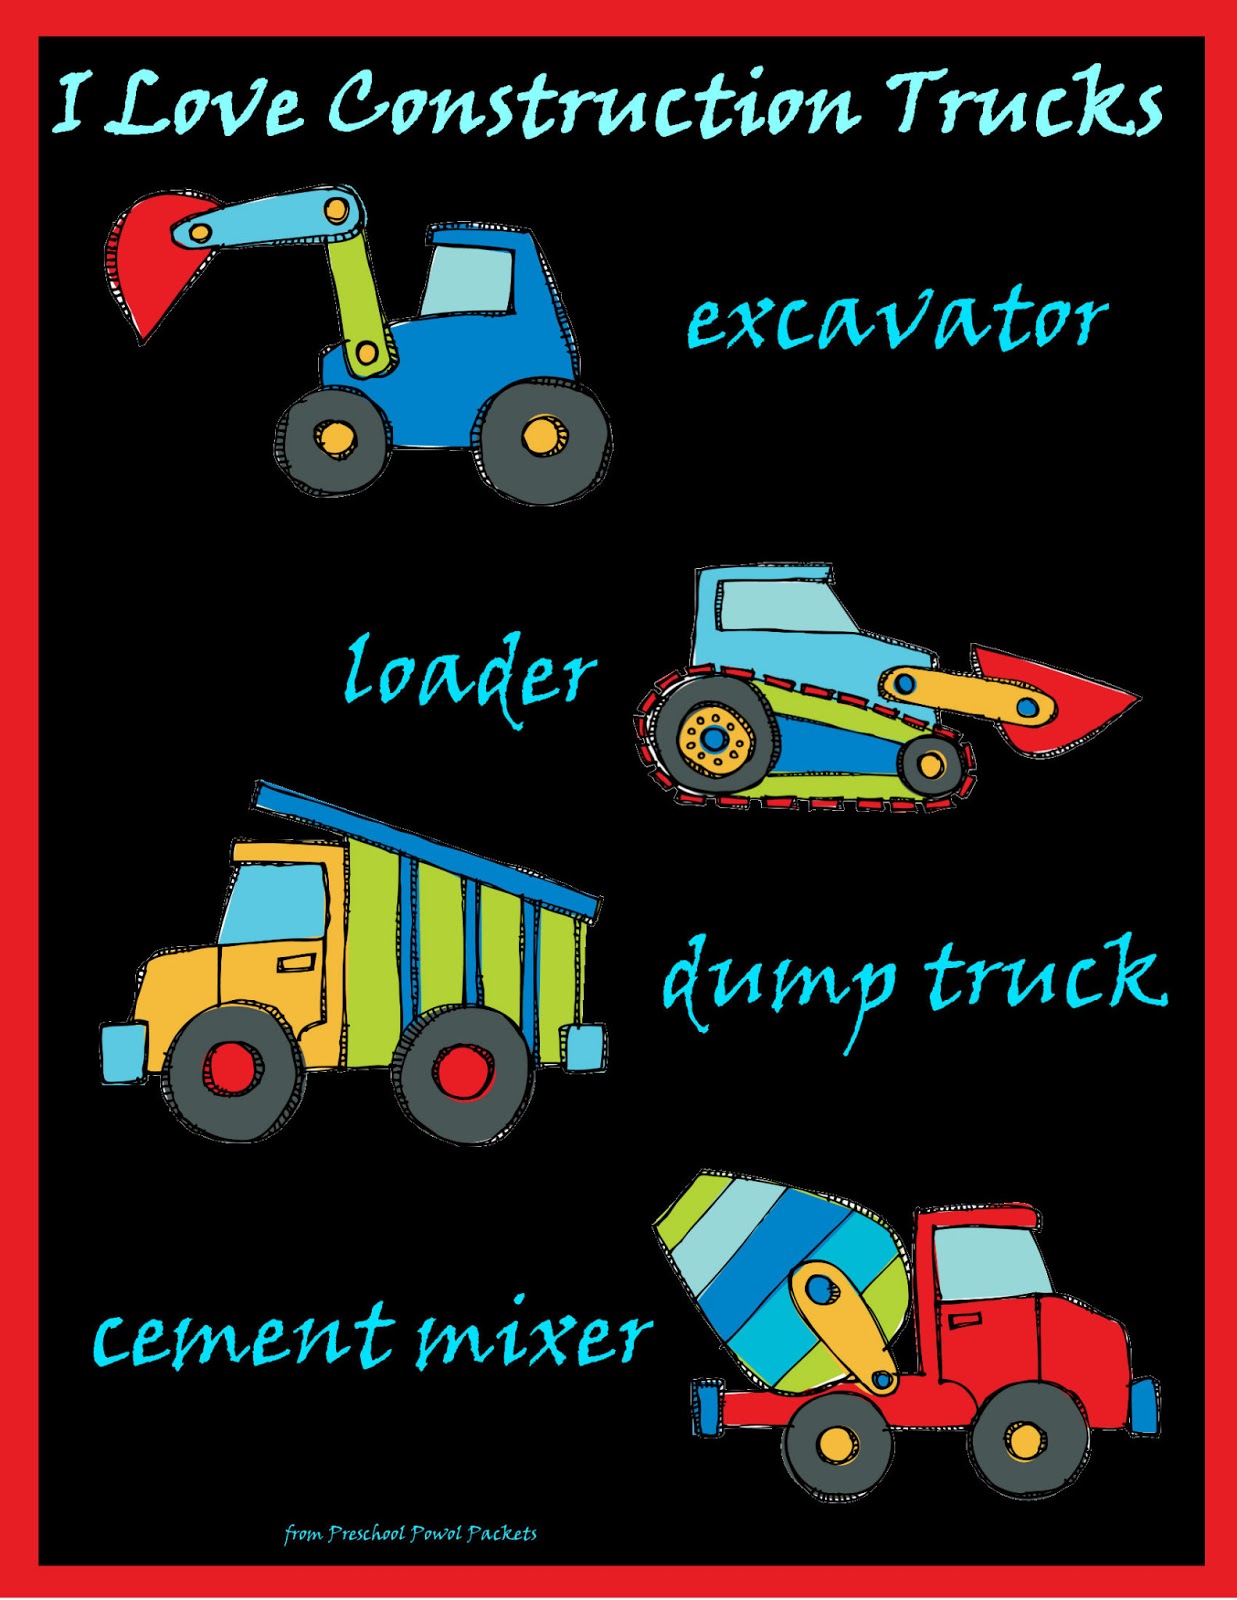 Real Construction Trucks for Children